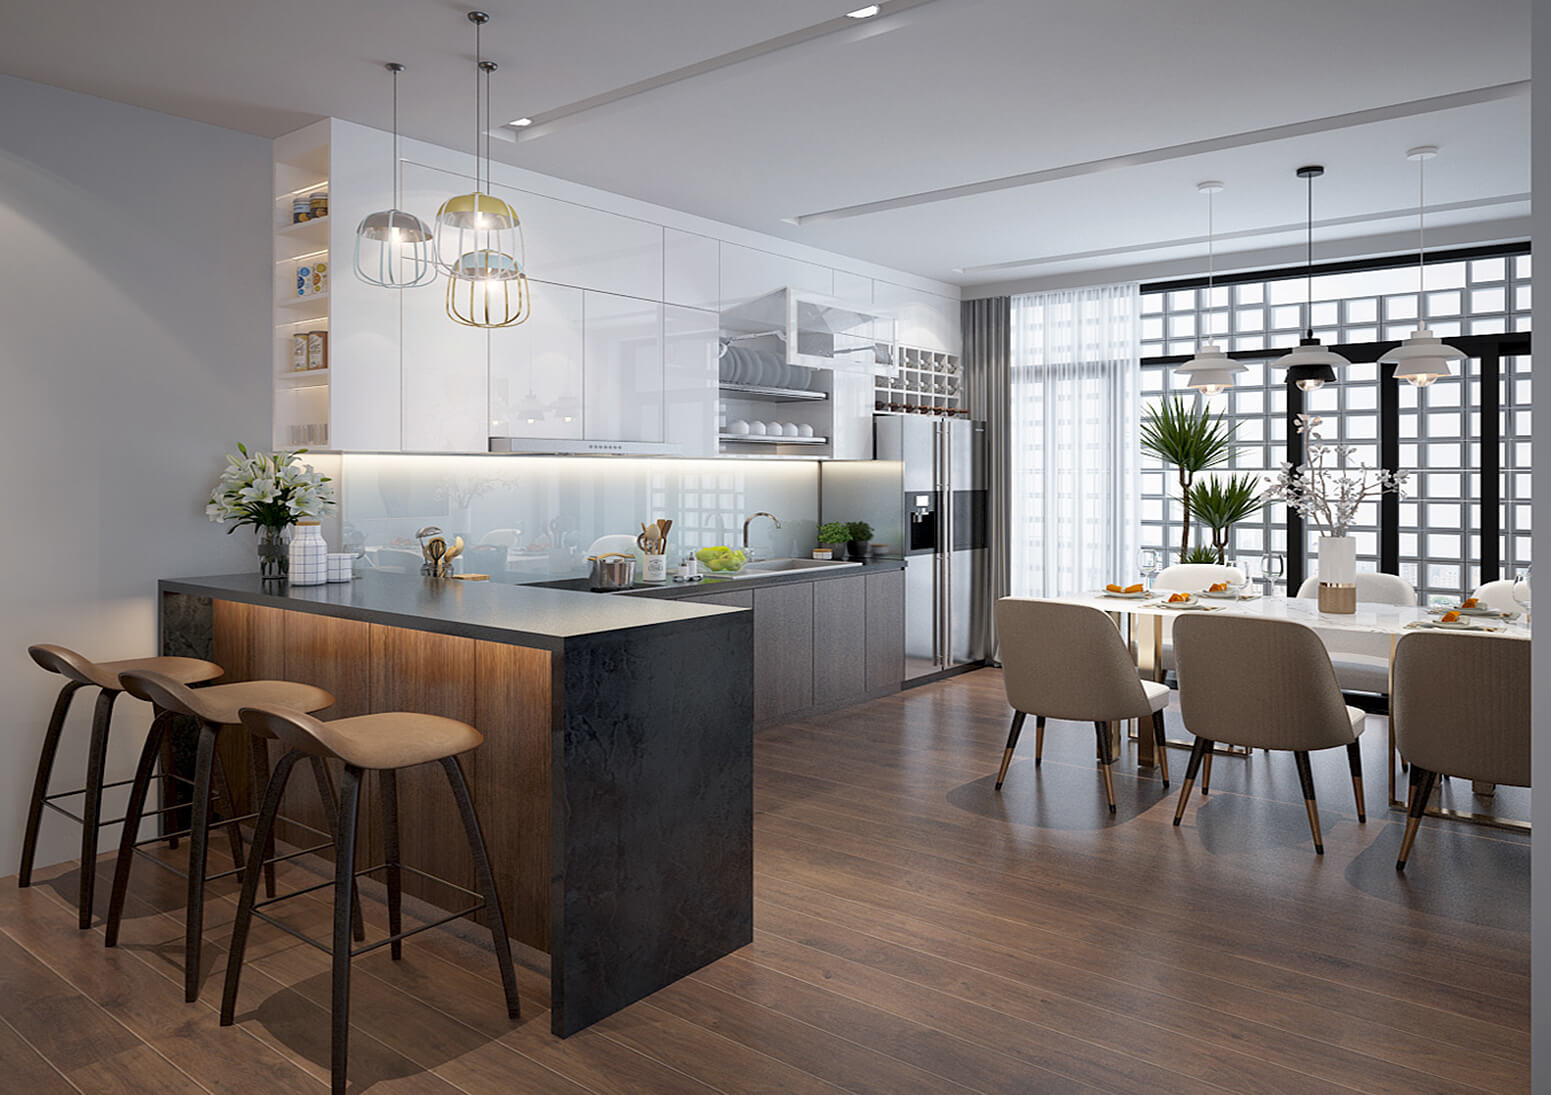 Hình ảnh: Không gian nội thất phòng bếp hiện đại, tiện nghi